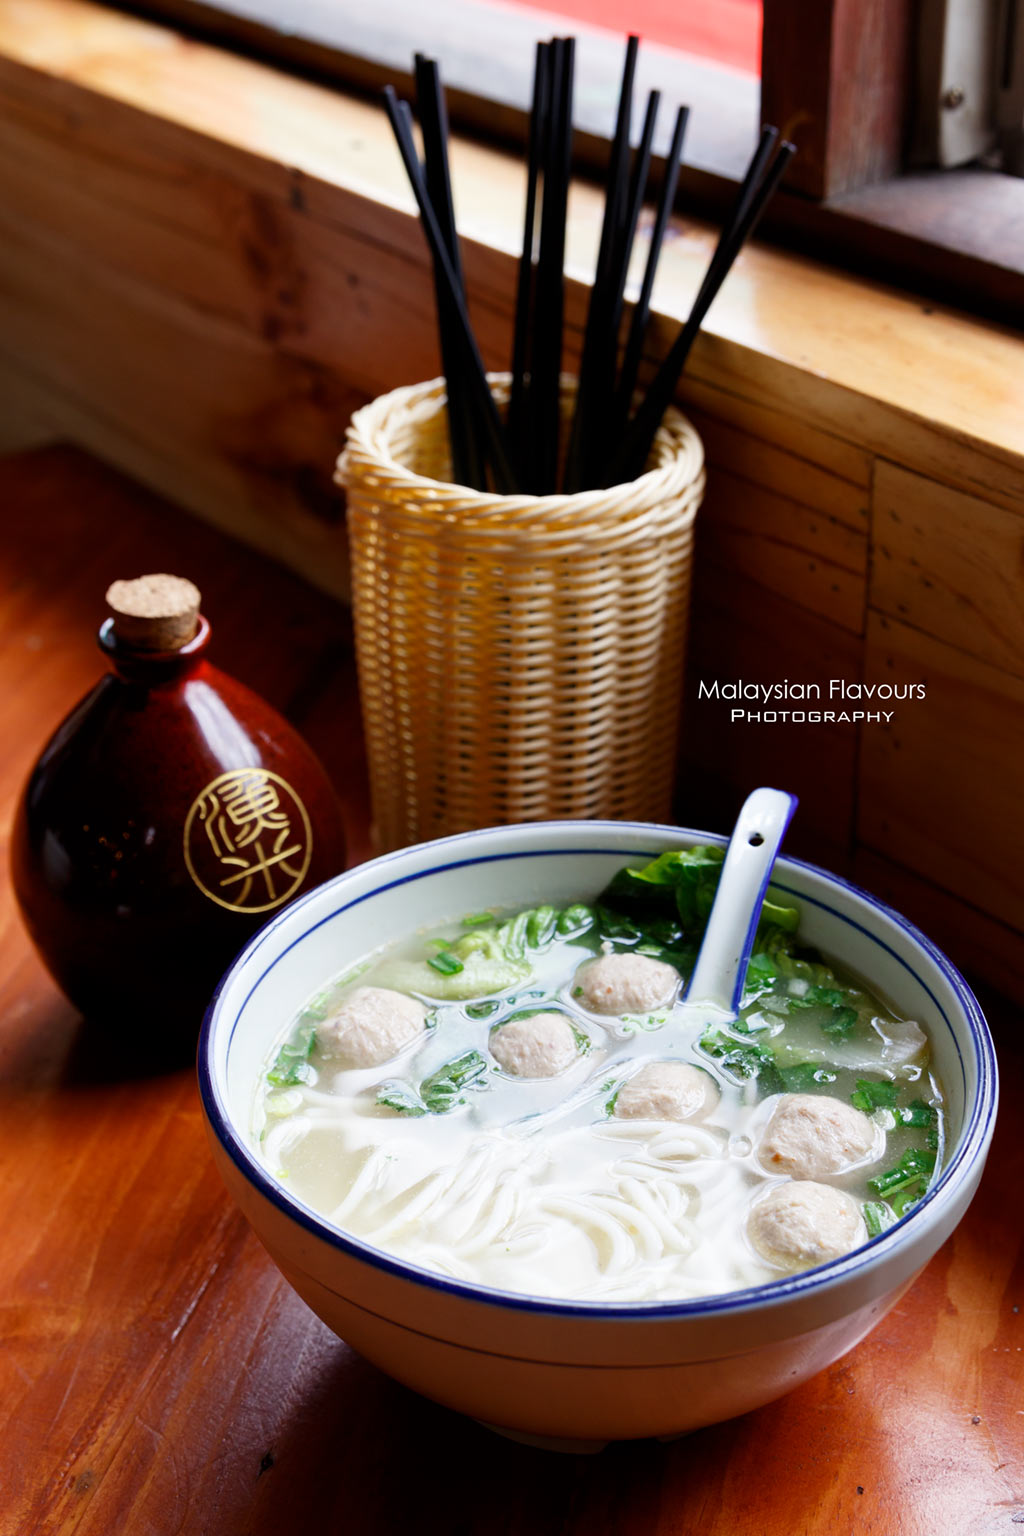 Yu Noodle Cuisine Chinatown KL